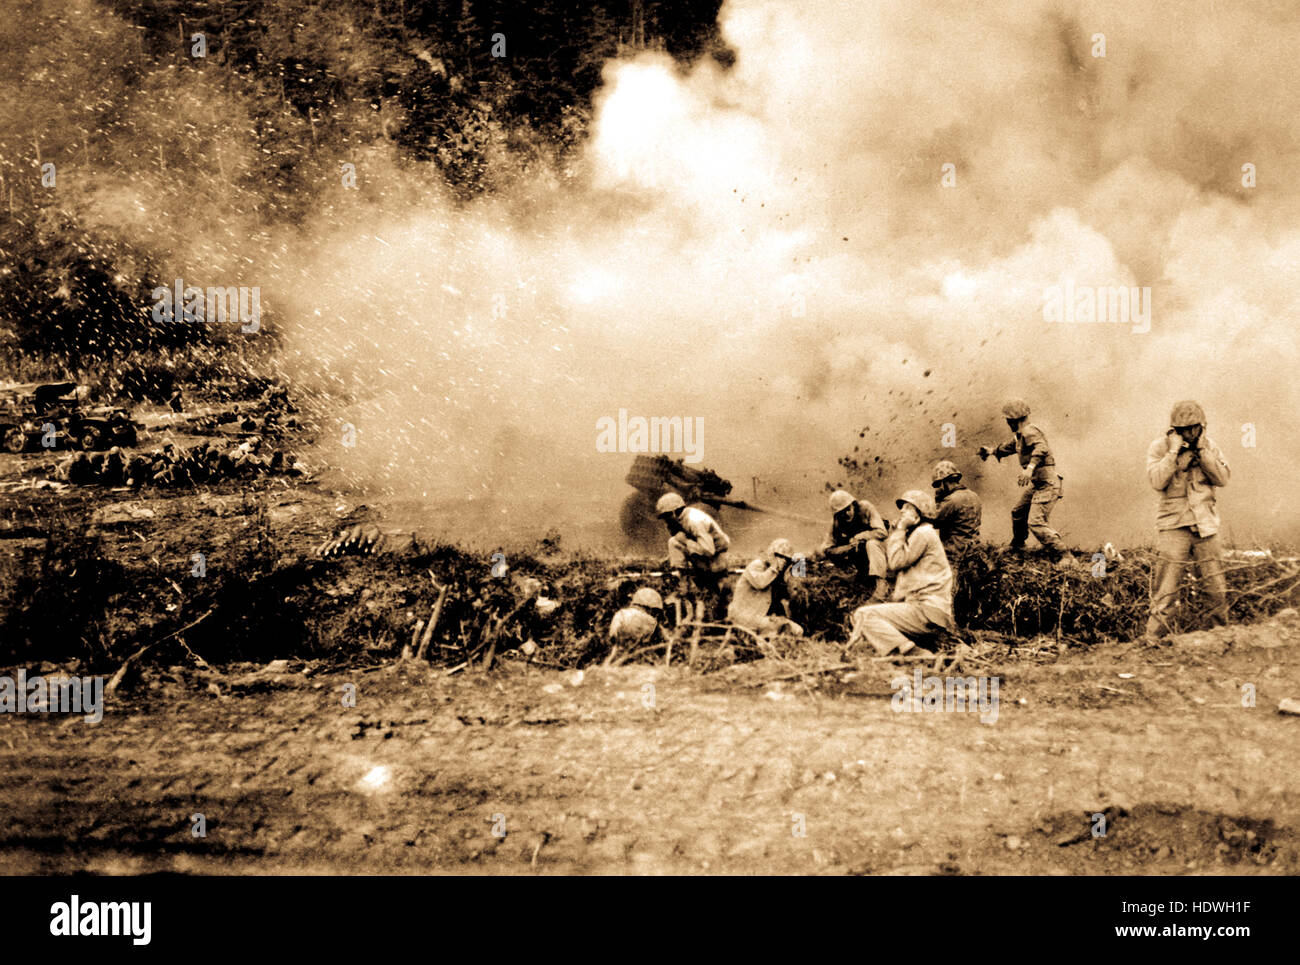 Los Marines de Estados Unidos lanzar un cohete barrera contra los comunistas chinos en la guerra de Corea. Foto de stock